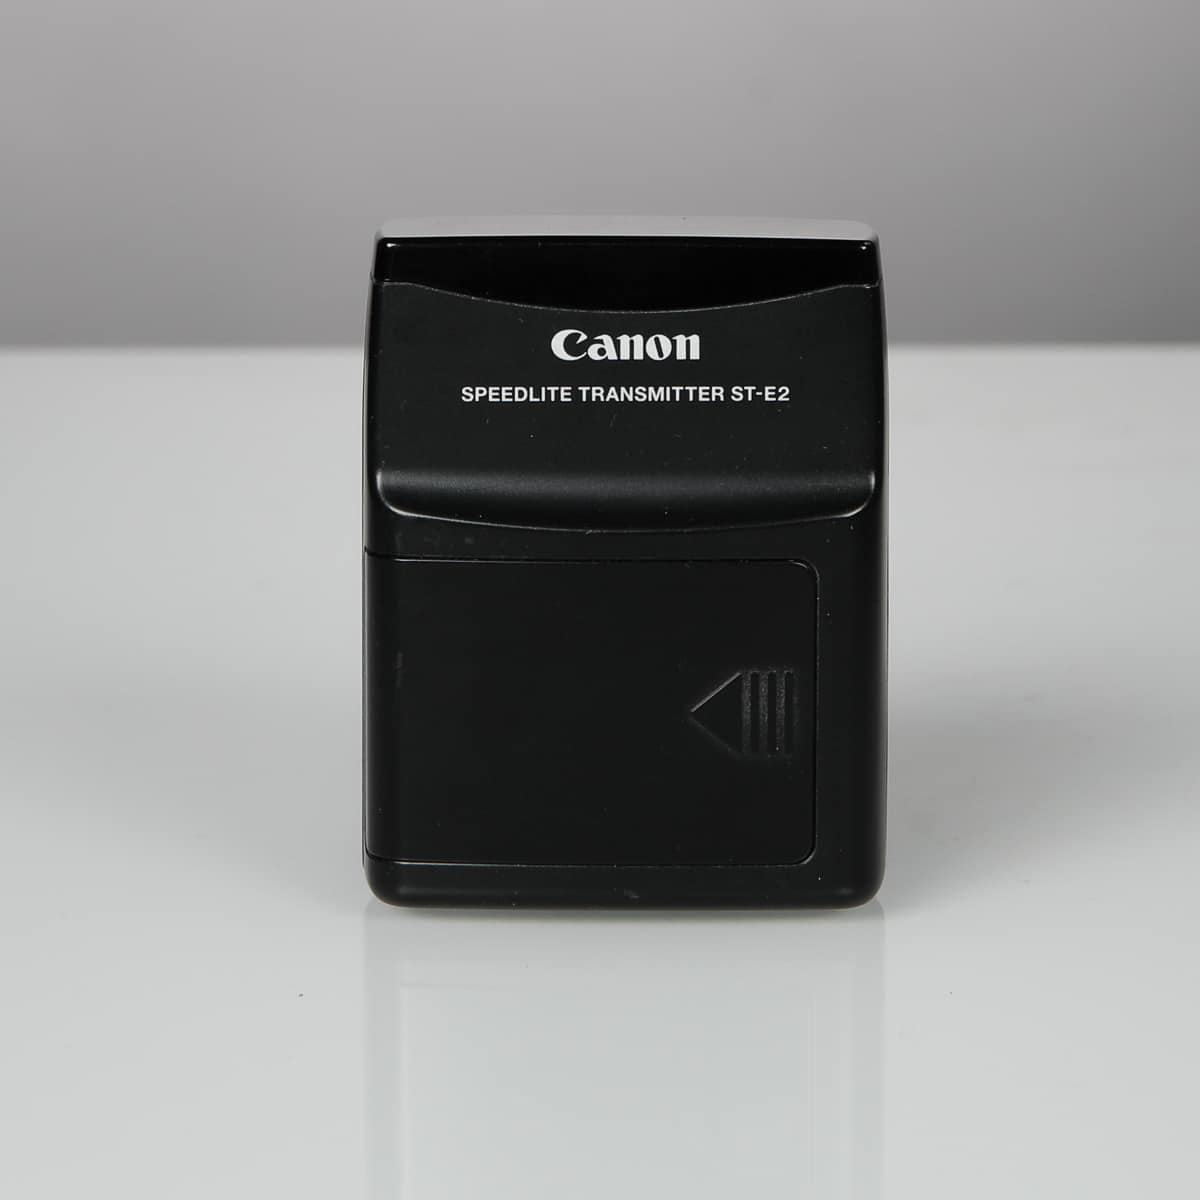 MYYTY Käytetty Canon ST-E2 Speedlite transmitter – lähetin